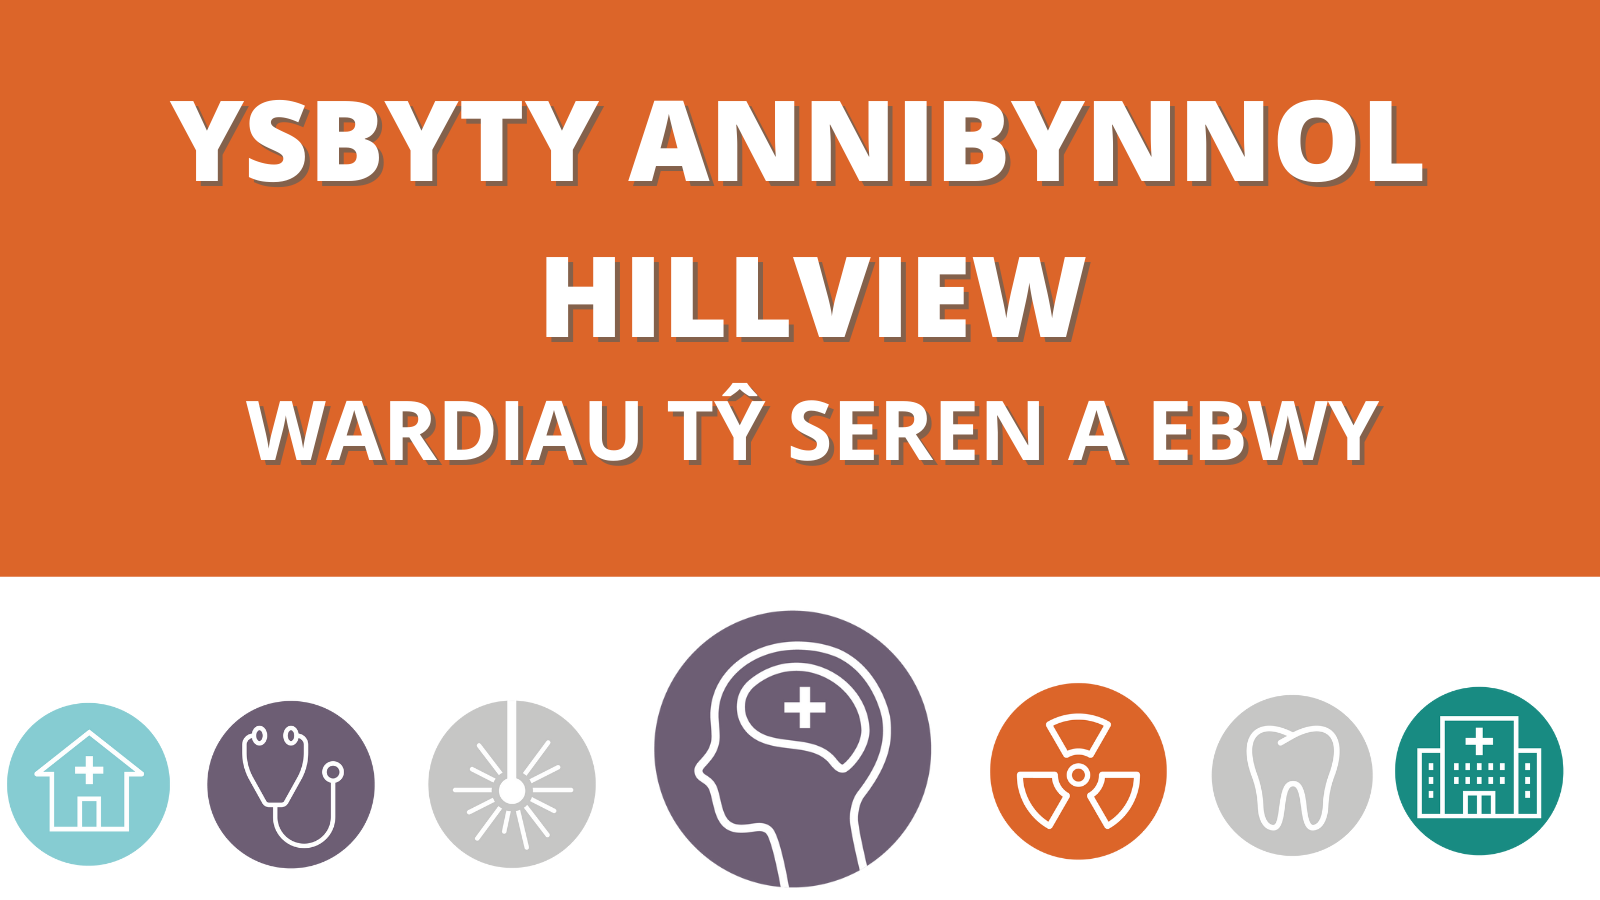 Ysbyty Annibynnol - Hillview wardiau Tŷ Seren a Ebwy